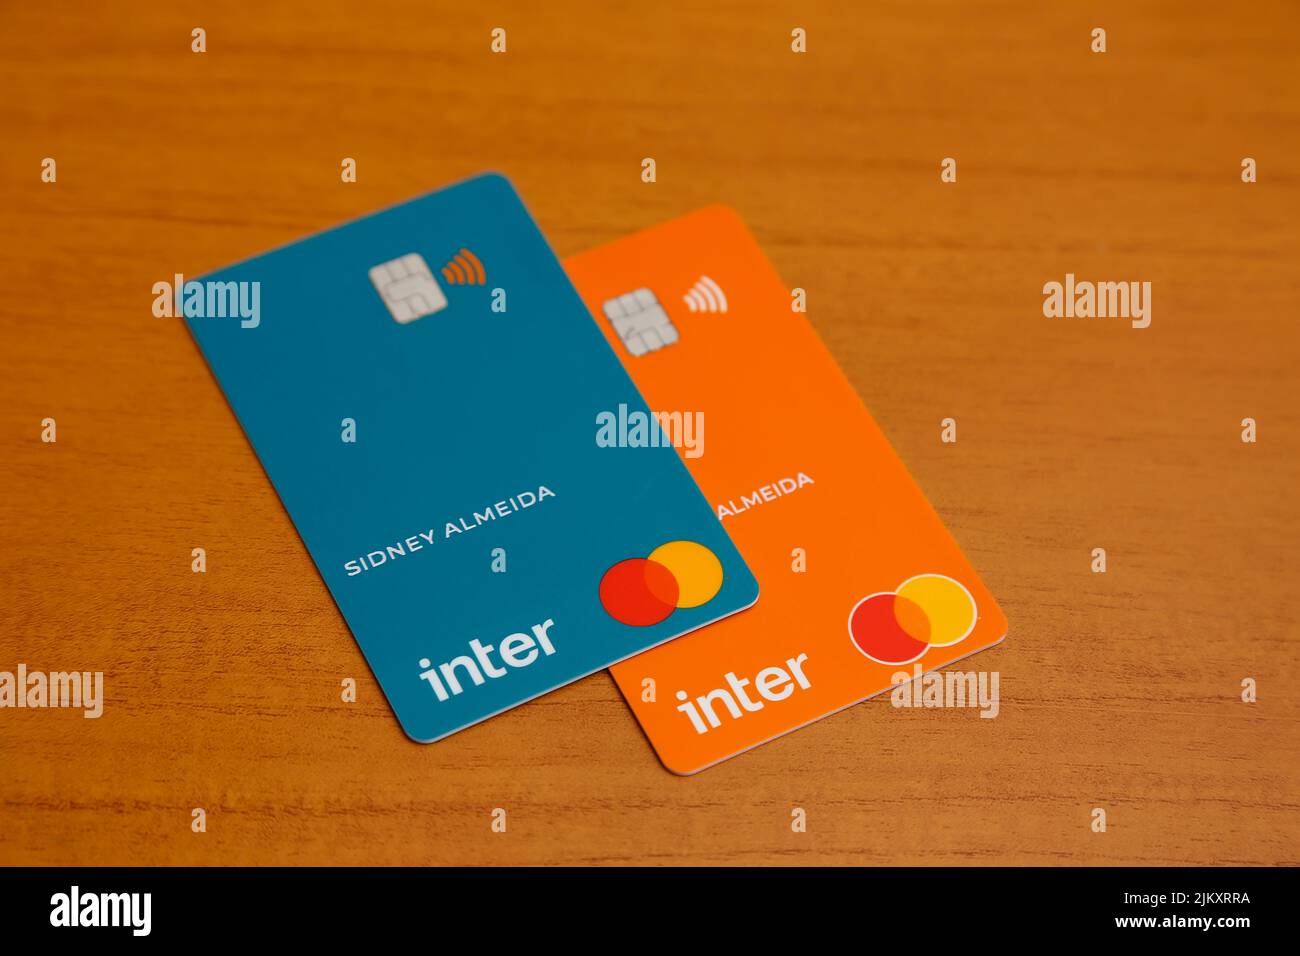 Minas Gerais, Brasil - 09 de julio de 2022: Tarjeta de crédito con logotipo inter-bancario y marca Mastercard Foto de stock